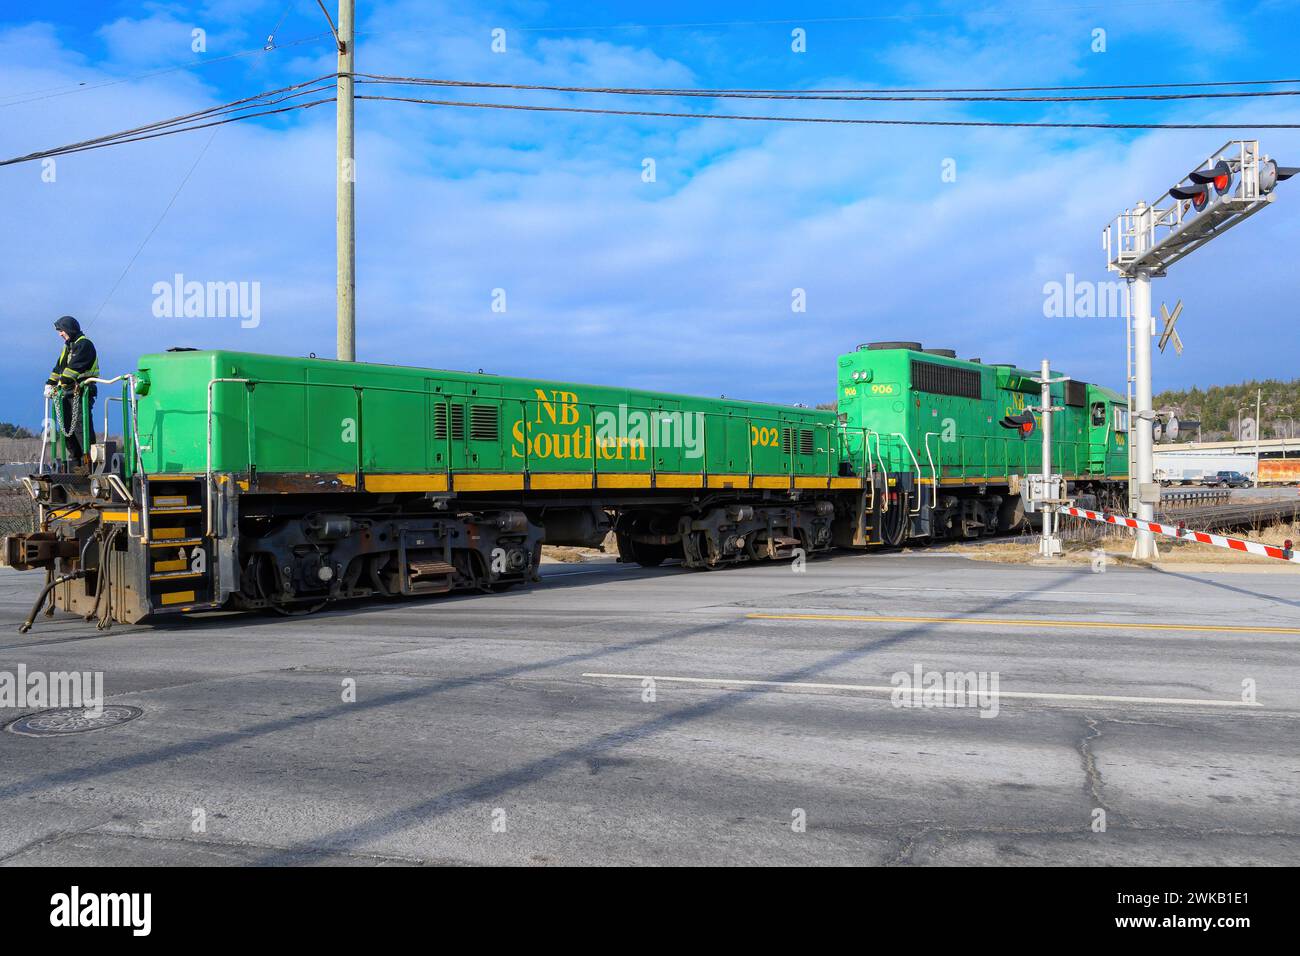 Saint John, NB, Canada - 2024-01-03: Un treno della NB Southern attraversa una strada cittadina. Il treno è composto solo da due locomotive, una a grandezza naturale e una più piccola a distanza. Foto Stock